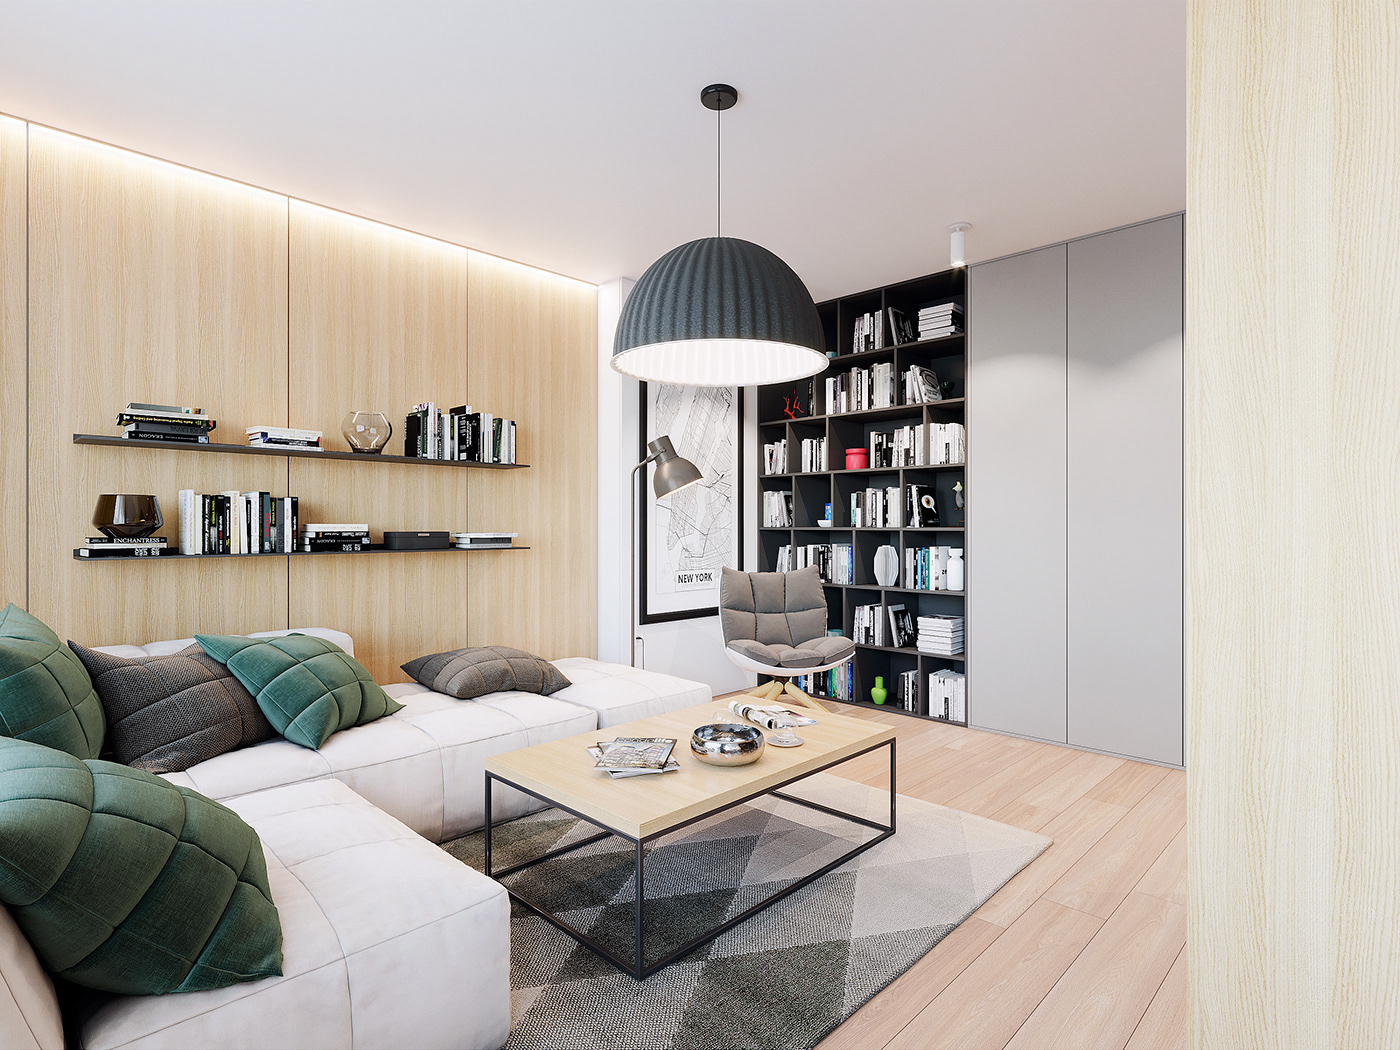 Tư vấn thiết kế căn hộ 90m² theo phong cách Scandinavian cho gia đình 3 người, chi phí 200 triệu - Ảnh 3.